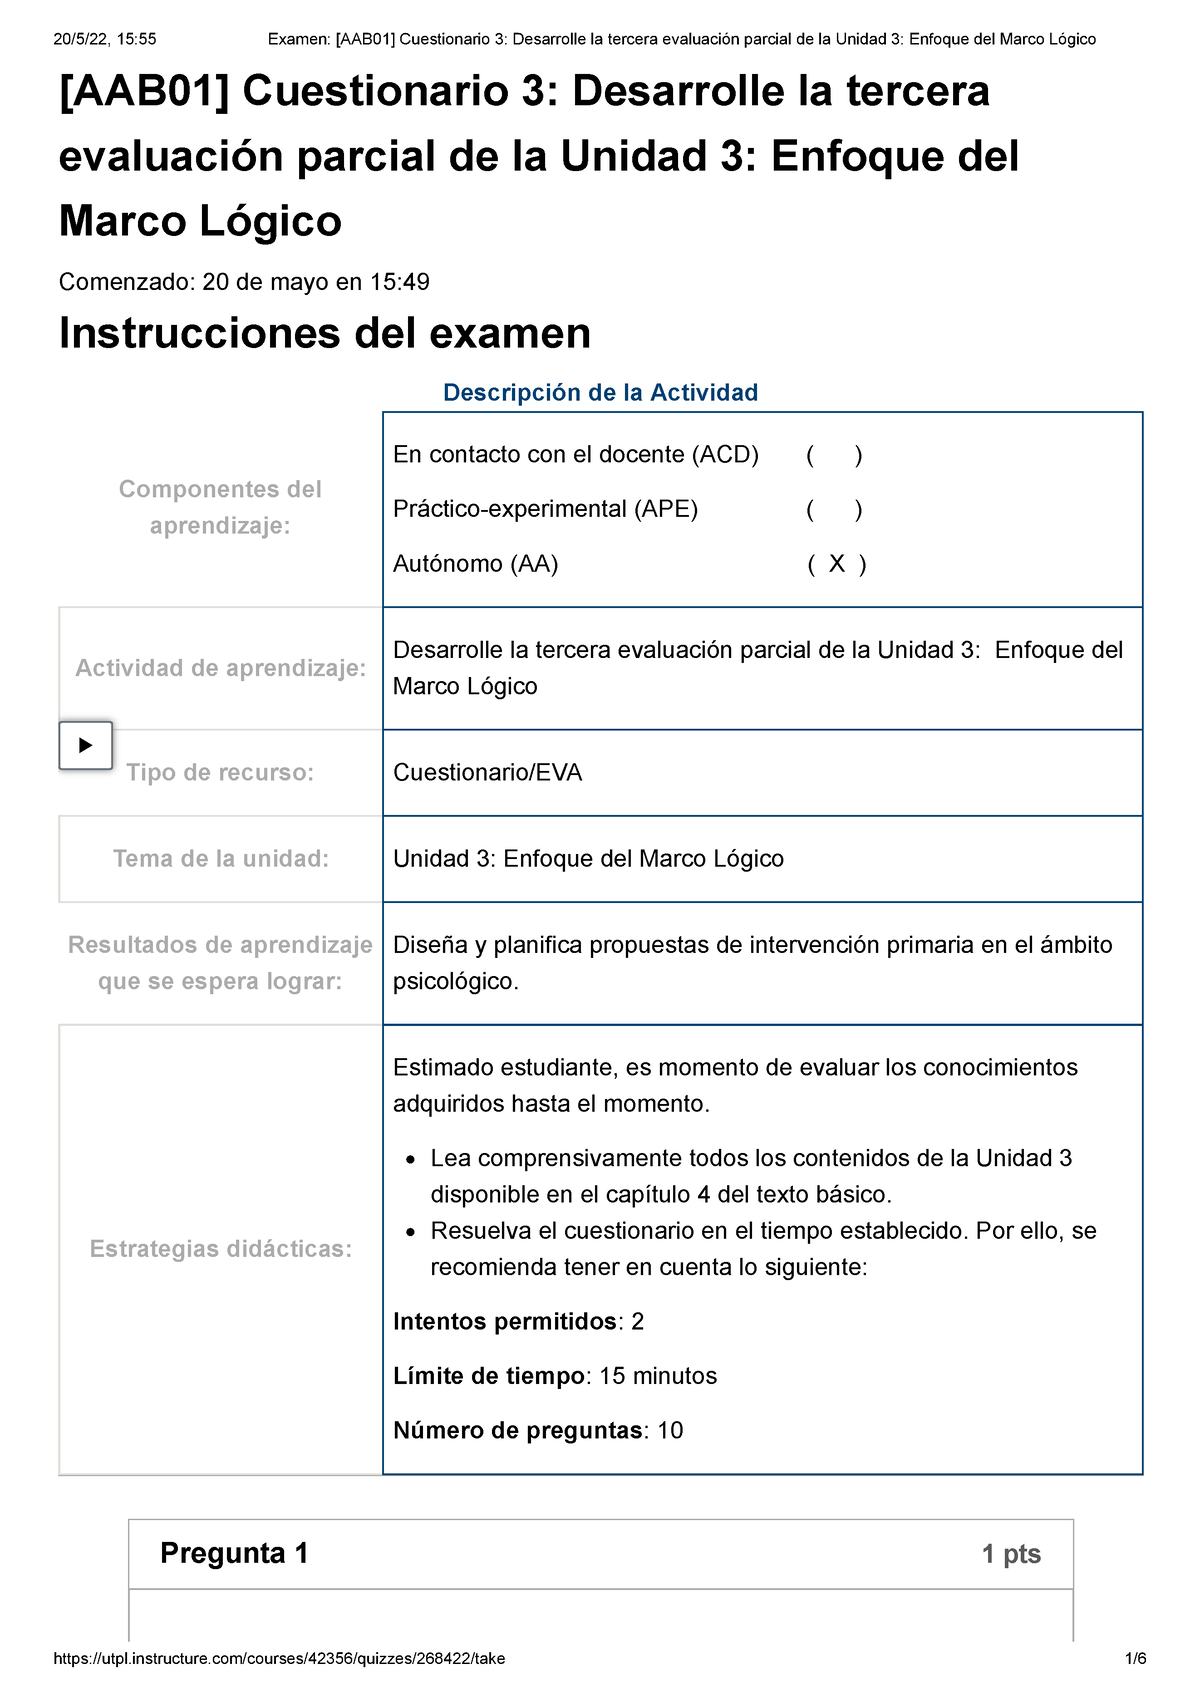 Examen Aab01 Cuestionario 3 Desarrolle La Tercera Evaluación Parcial